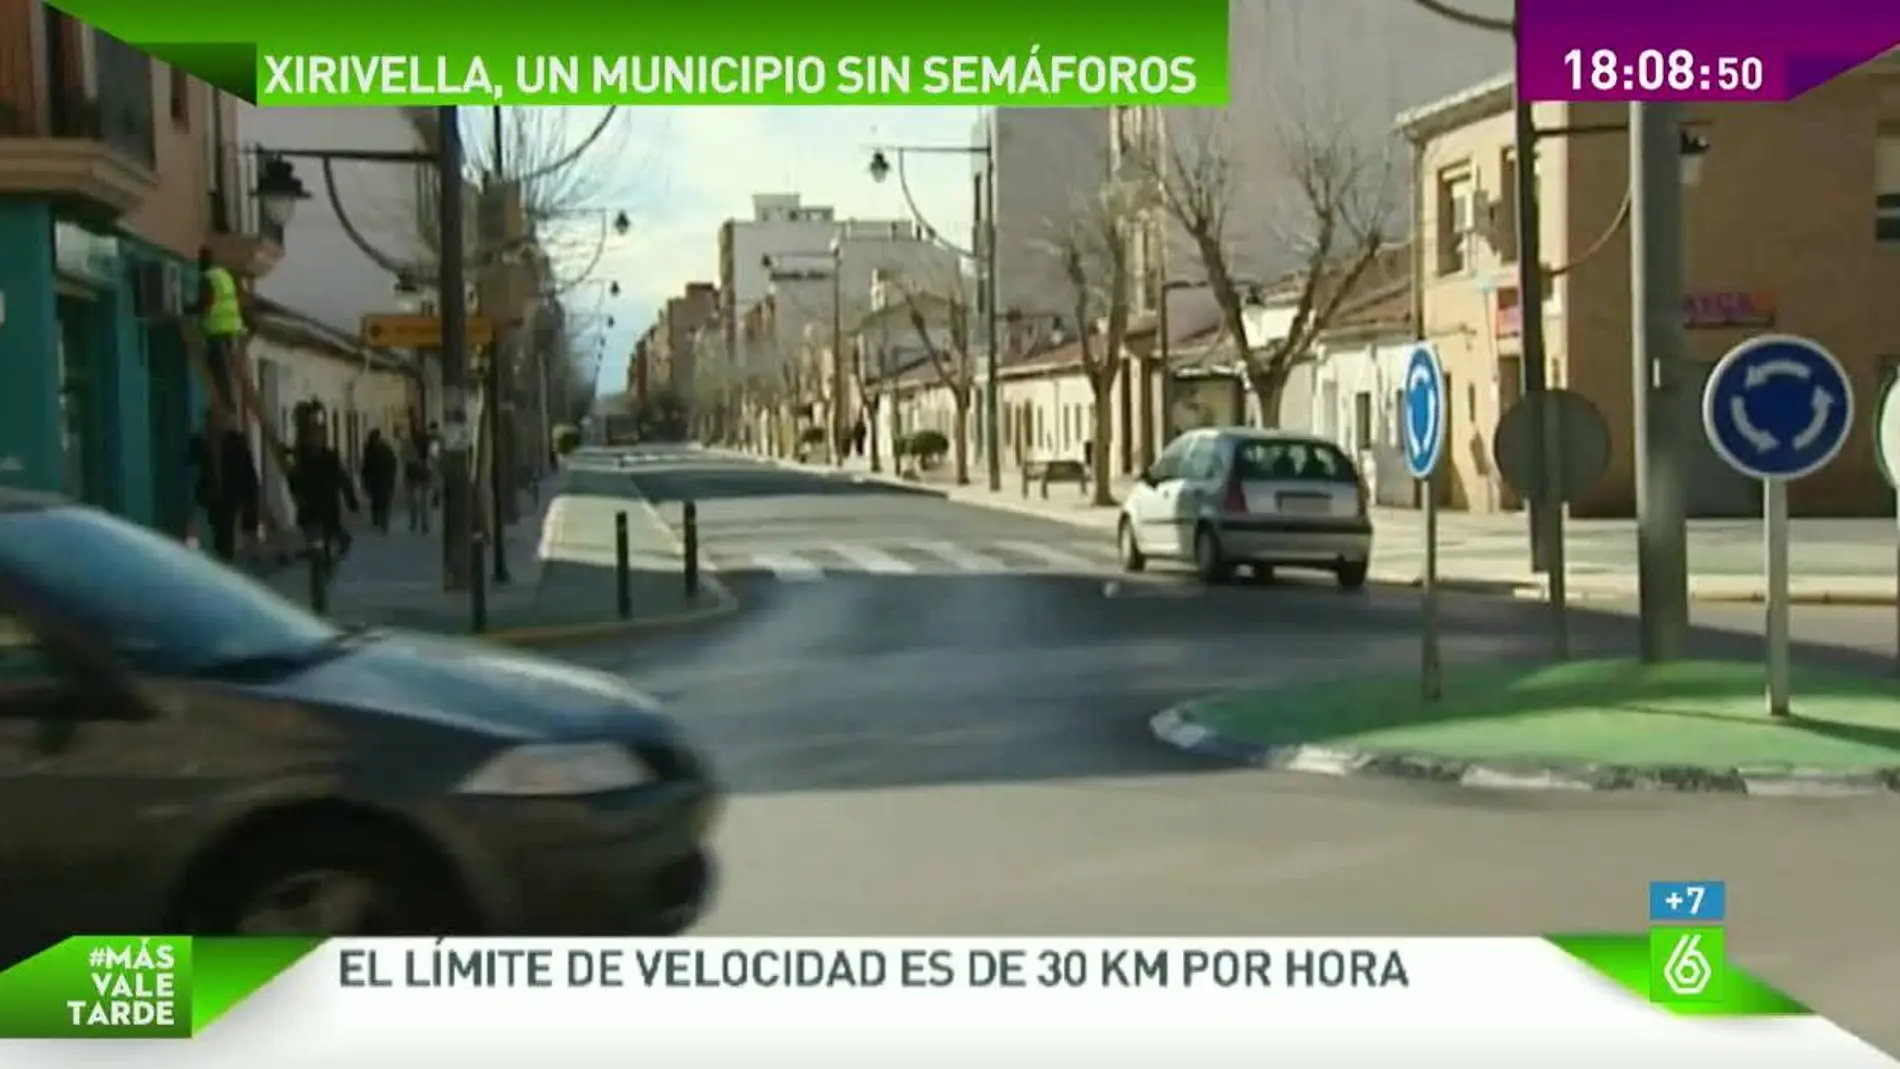 Xirivella, municipio sin semáforos